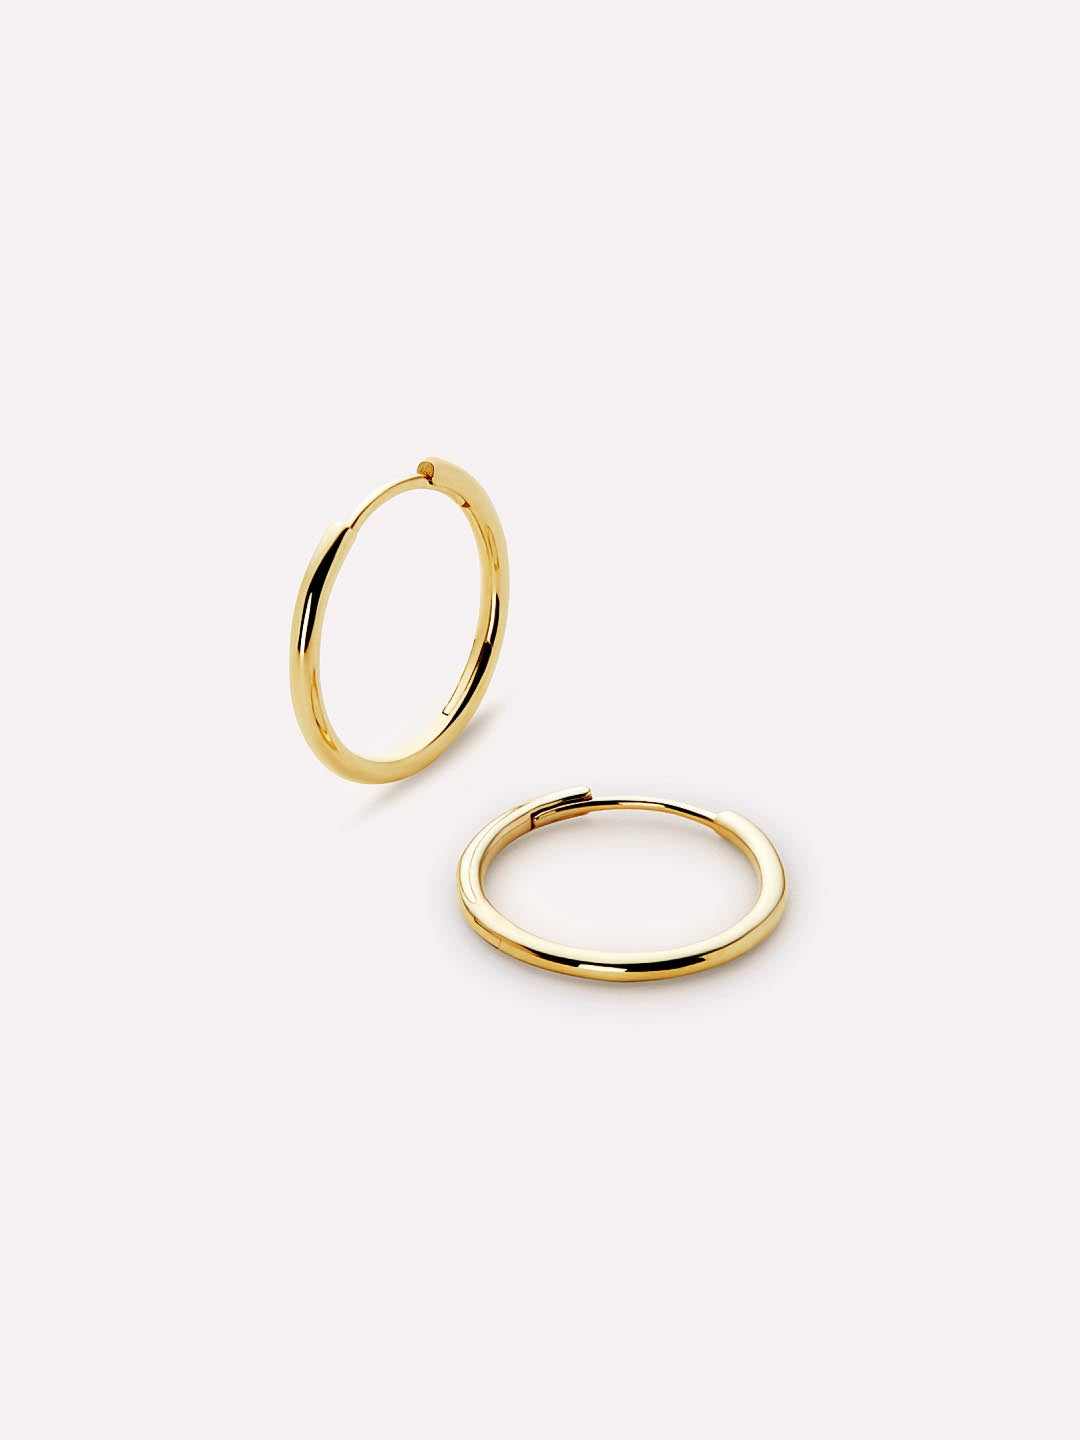 Small Earrings Gold | Small Gold Hoop Earrings – Peach Tassels